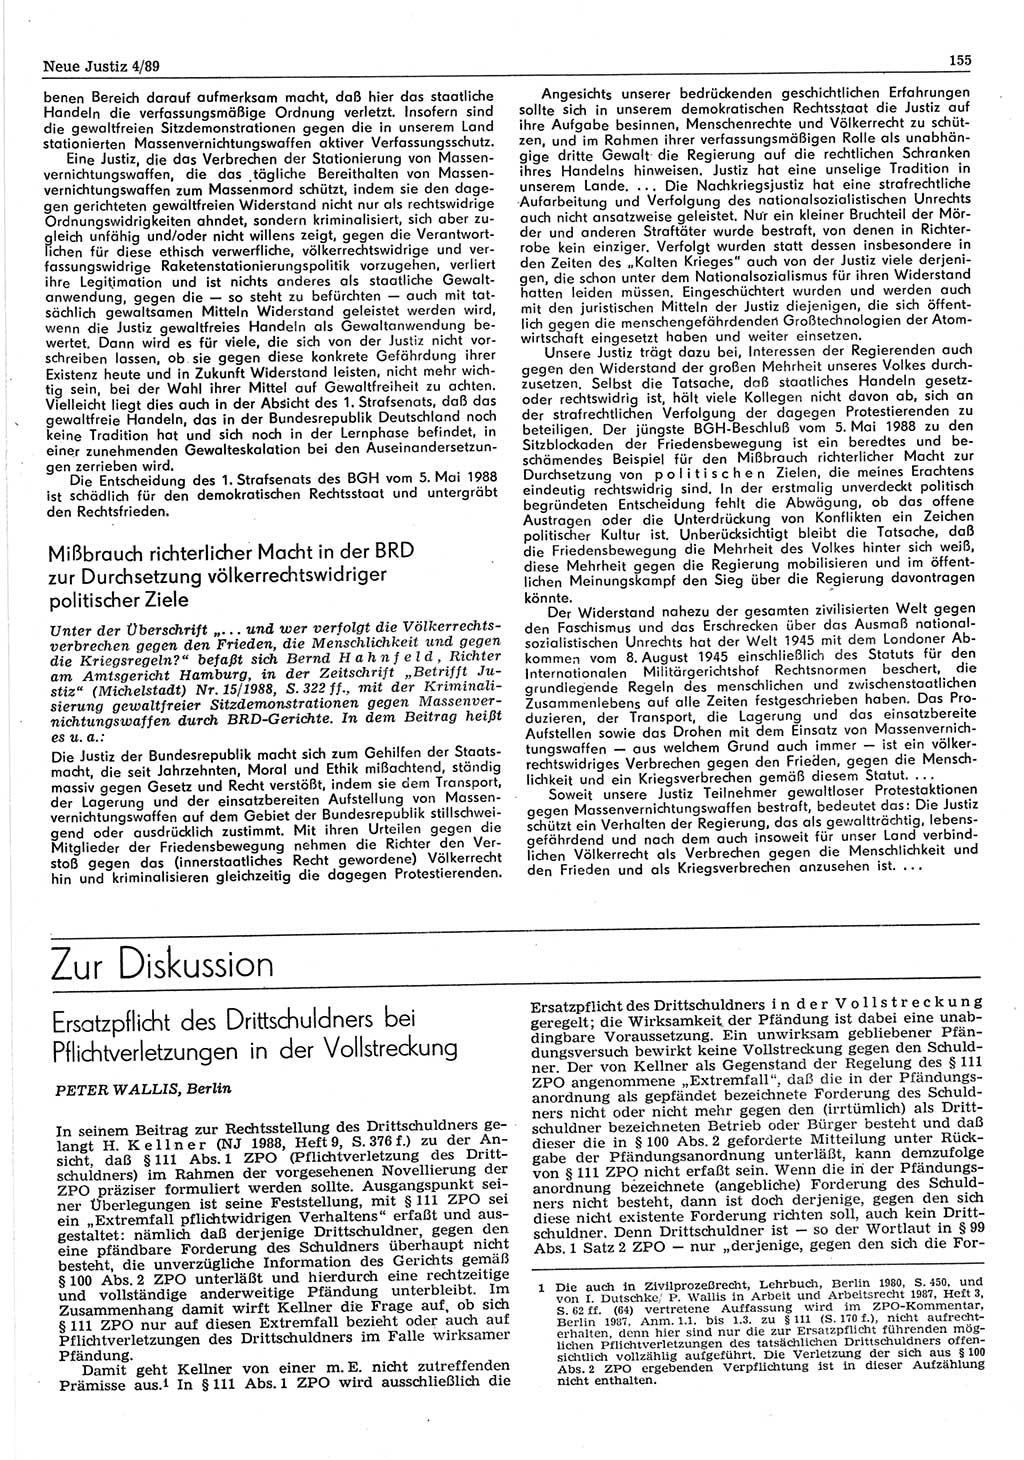 Neue Justiz (NJ), Zeitschrift für sozialistisches Recht und Gesetzlichkeit [Deutsche Demokratische Republik (DDR)], 43. Jahrgang 1989, Seite 155 (NJ DDR 1989, S. 155)